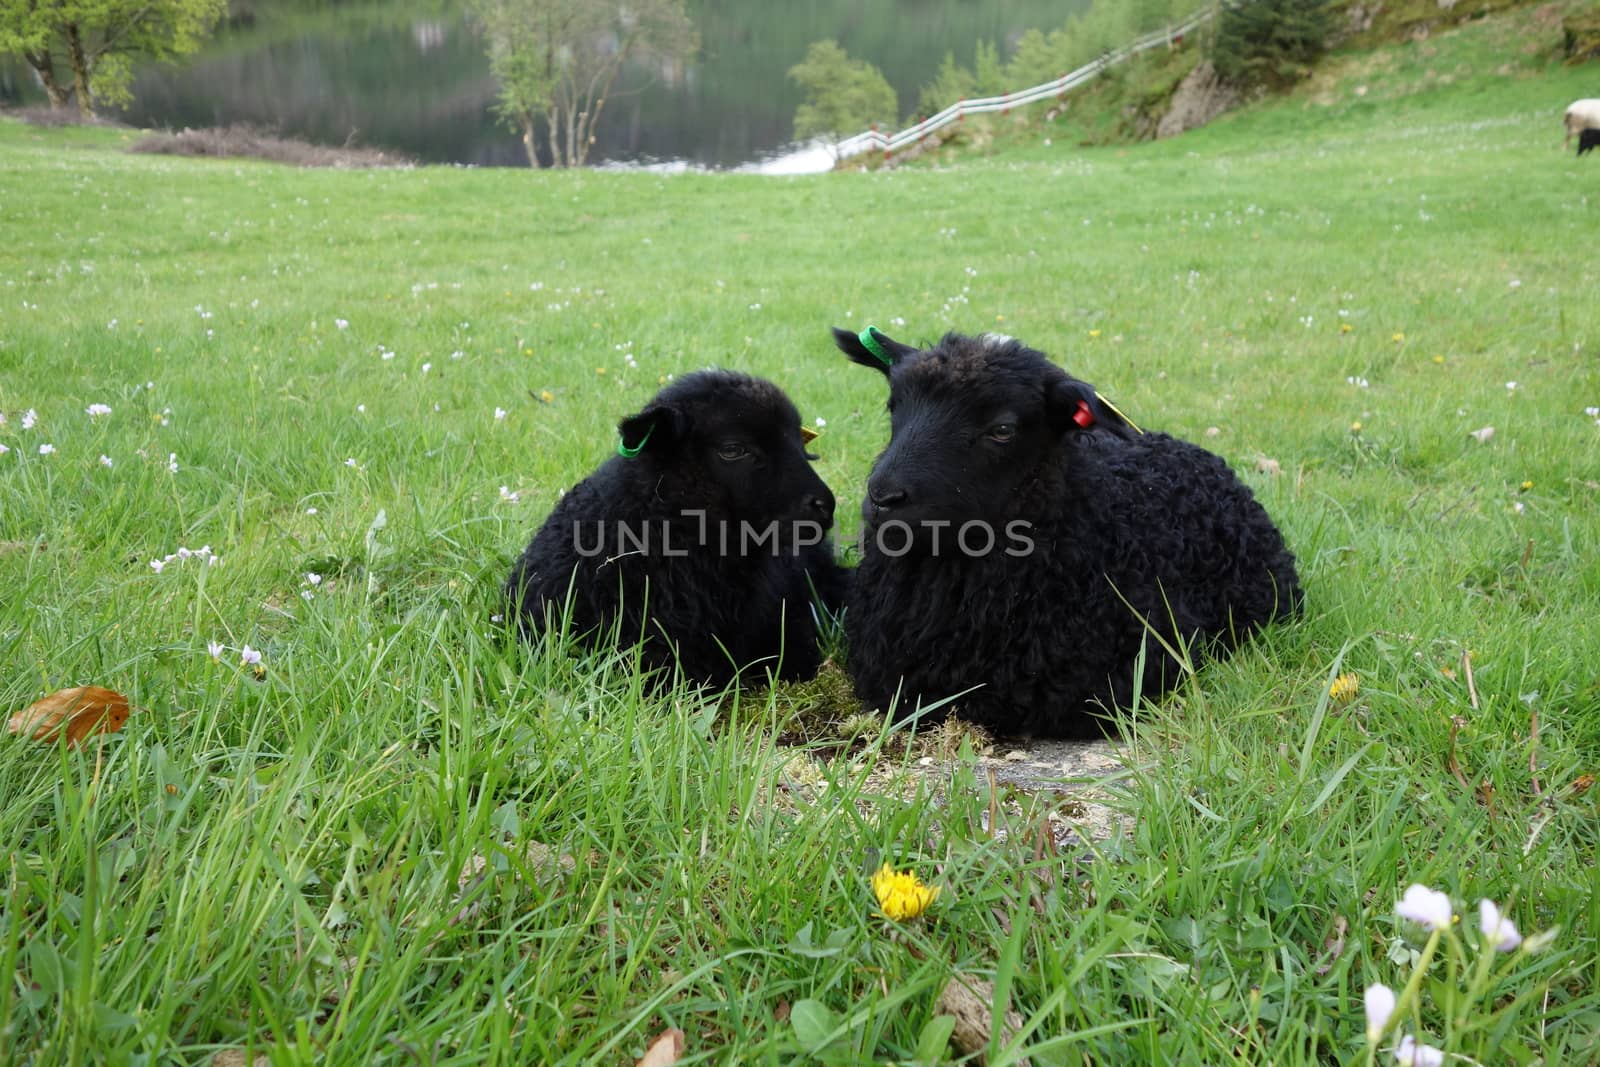 Sheep from Øvre Eide farm in Bergen, Norway